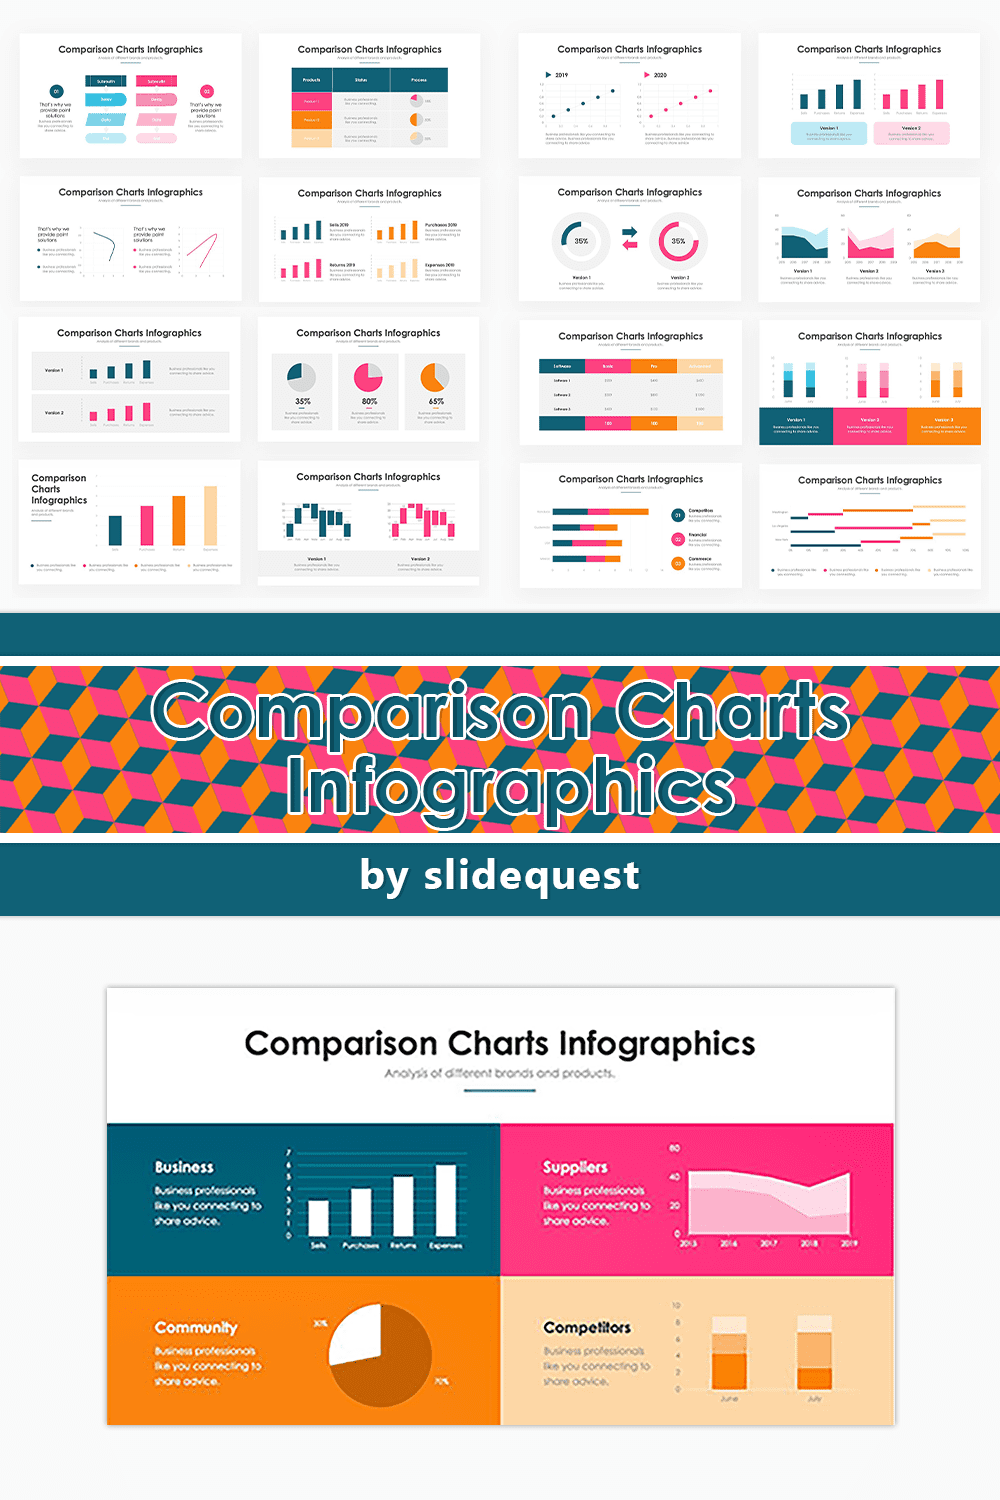 Comparison Charts Infographics pinterest image.